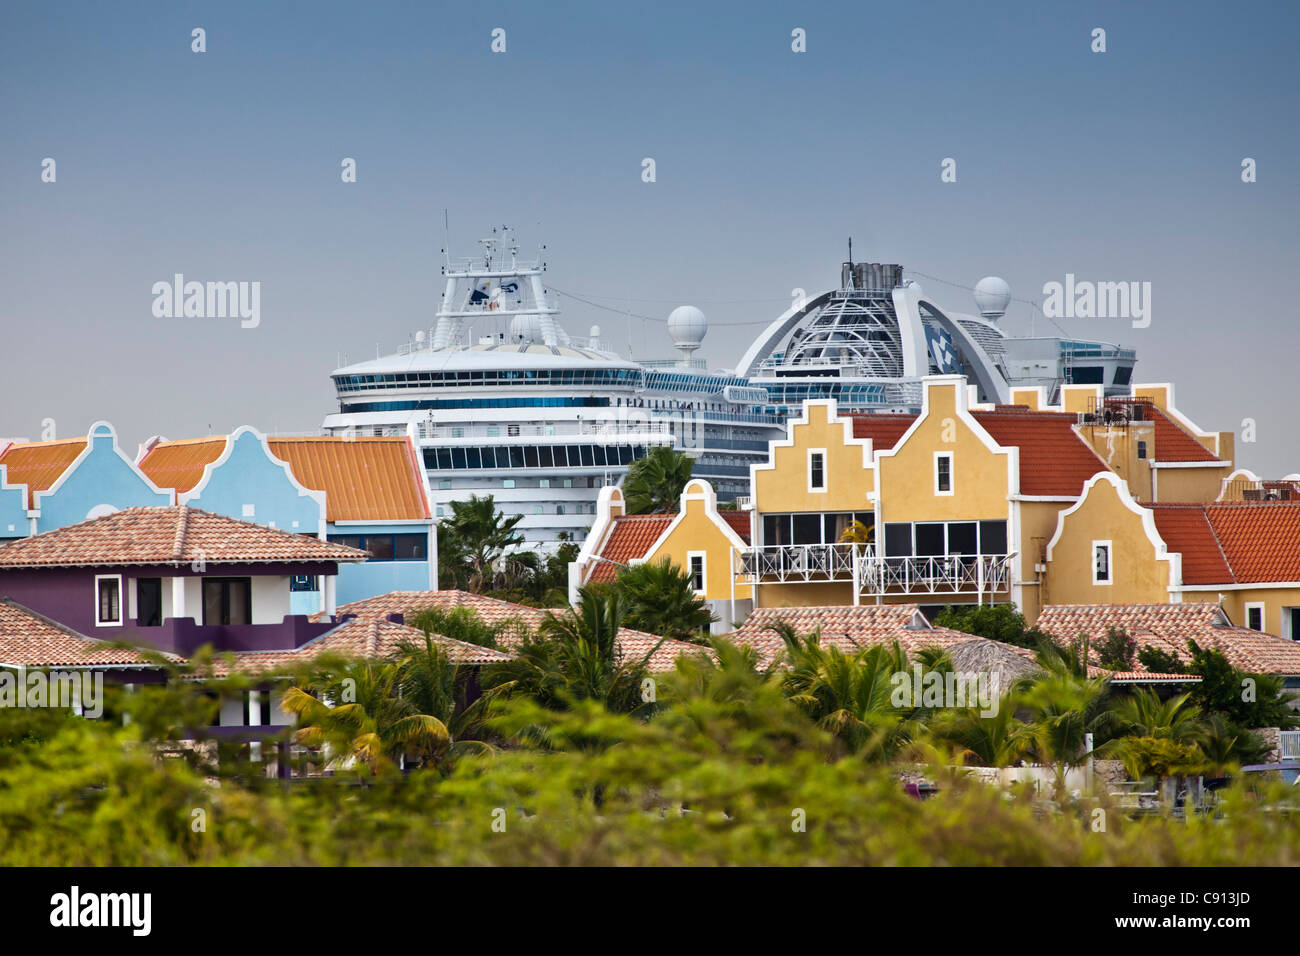 Les Pays-Bas, l'île de Bonaire, Antilles néerlandaises, bateau de croisière dans le port. Maisons de vacances dans la région de Old Dutch style architecture. Banque D'Images